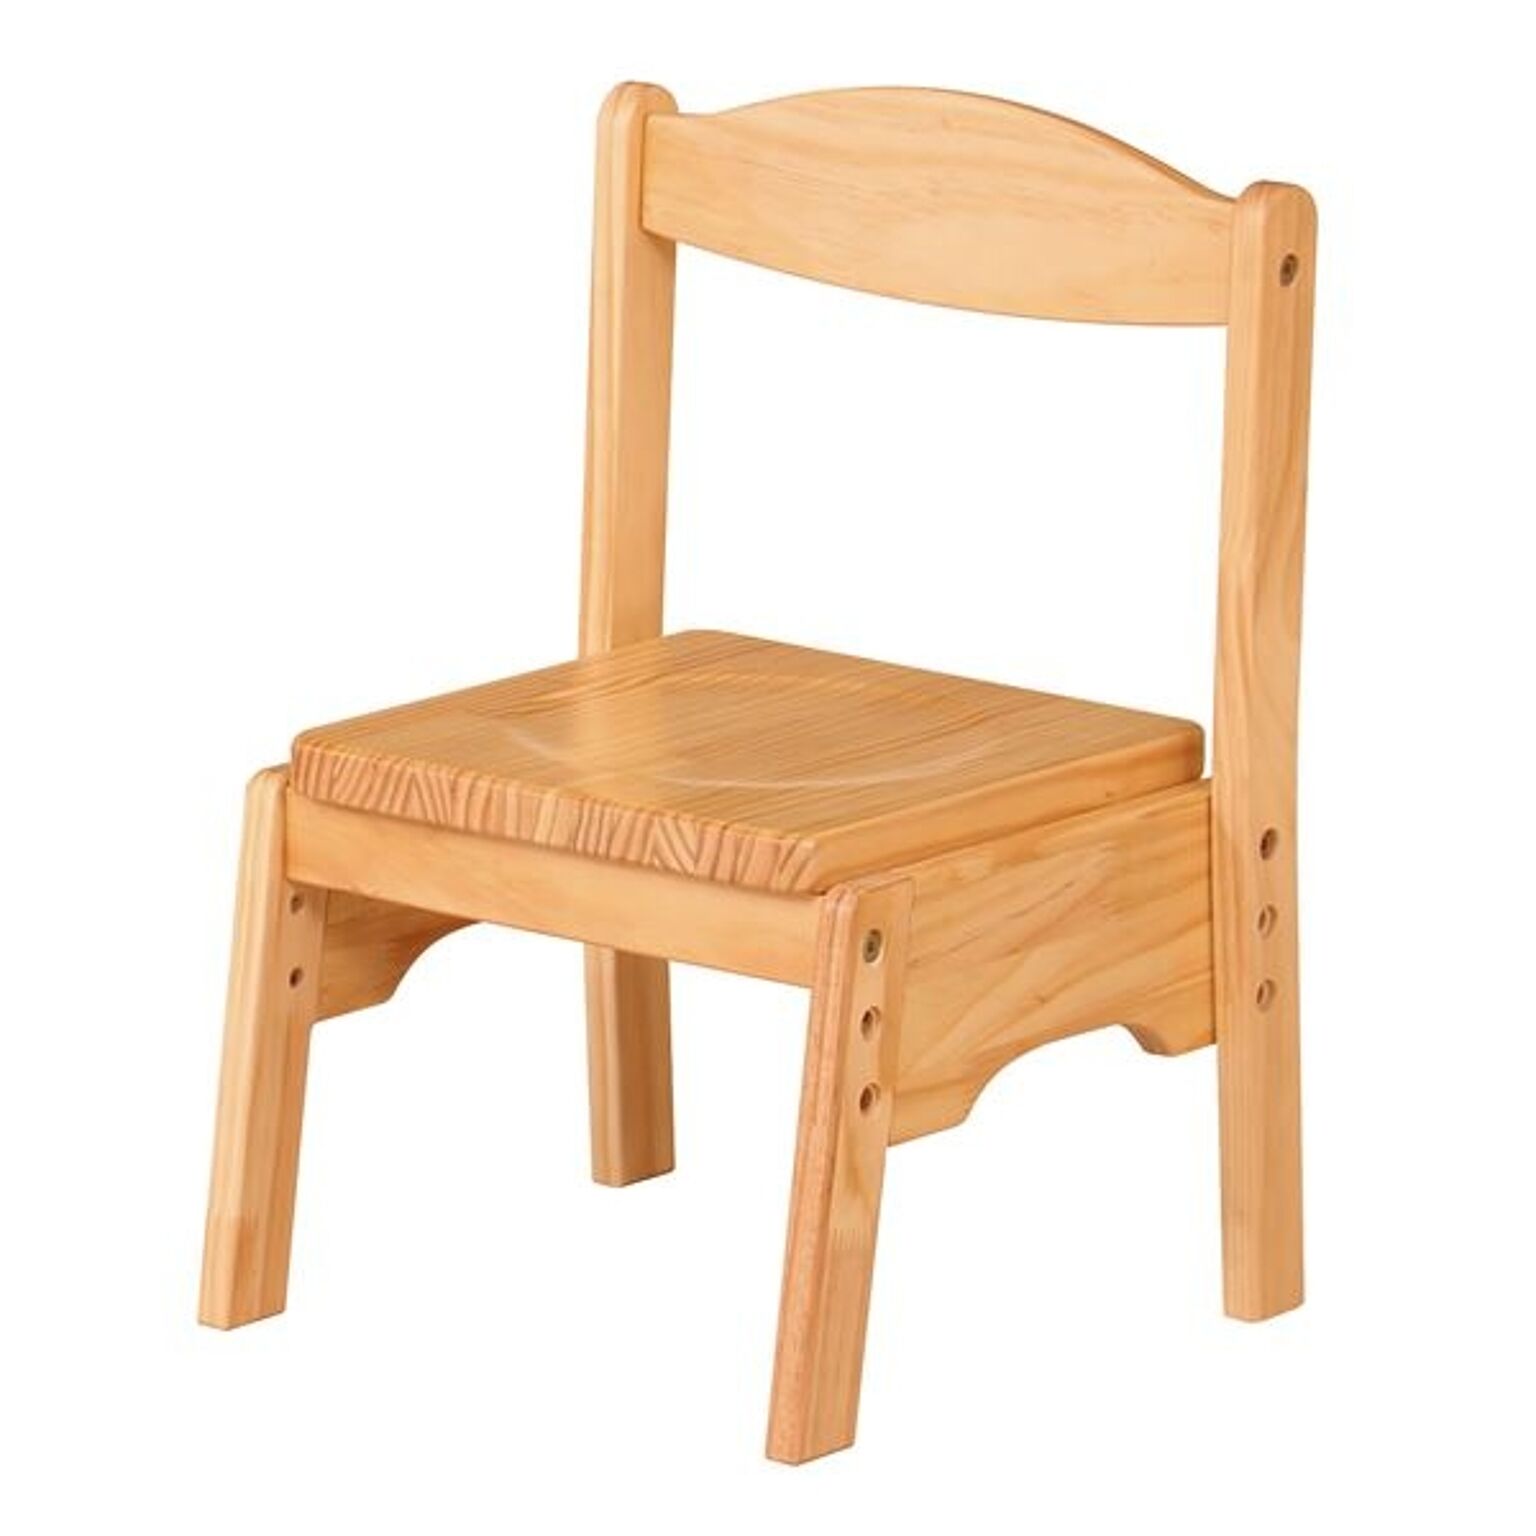 キッズチェア/子供椅子 【ナチュラル 幅350mm】 木製 スタッキング可 〔リビング プレゼント〕 組立品【代引不可】